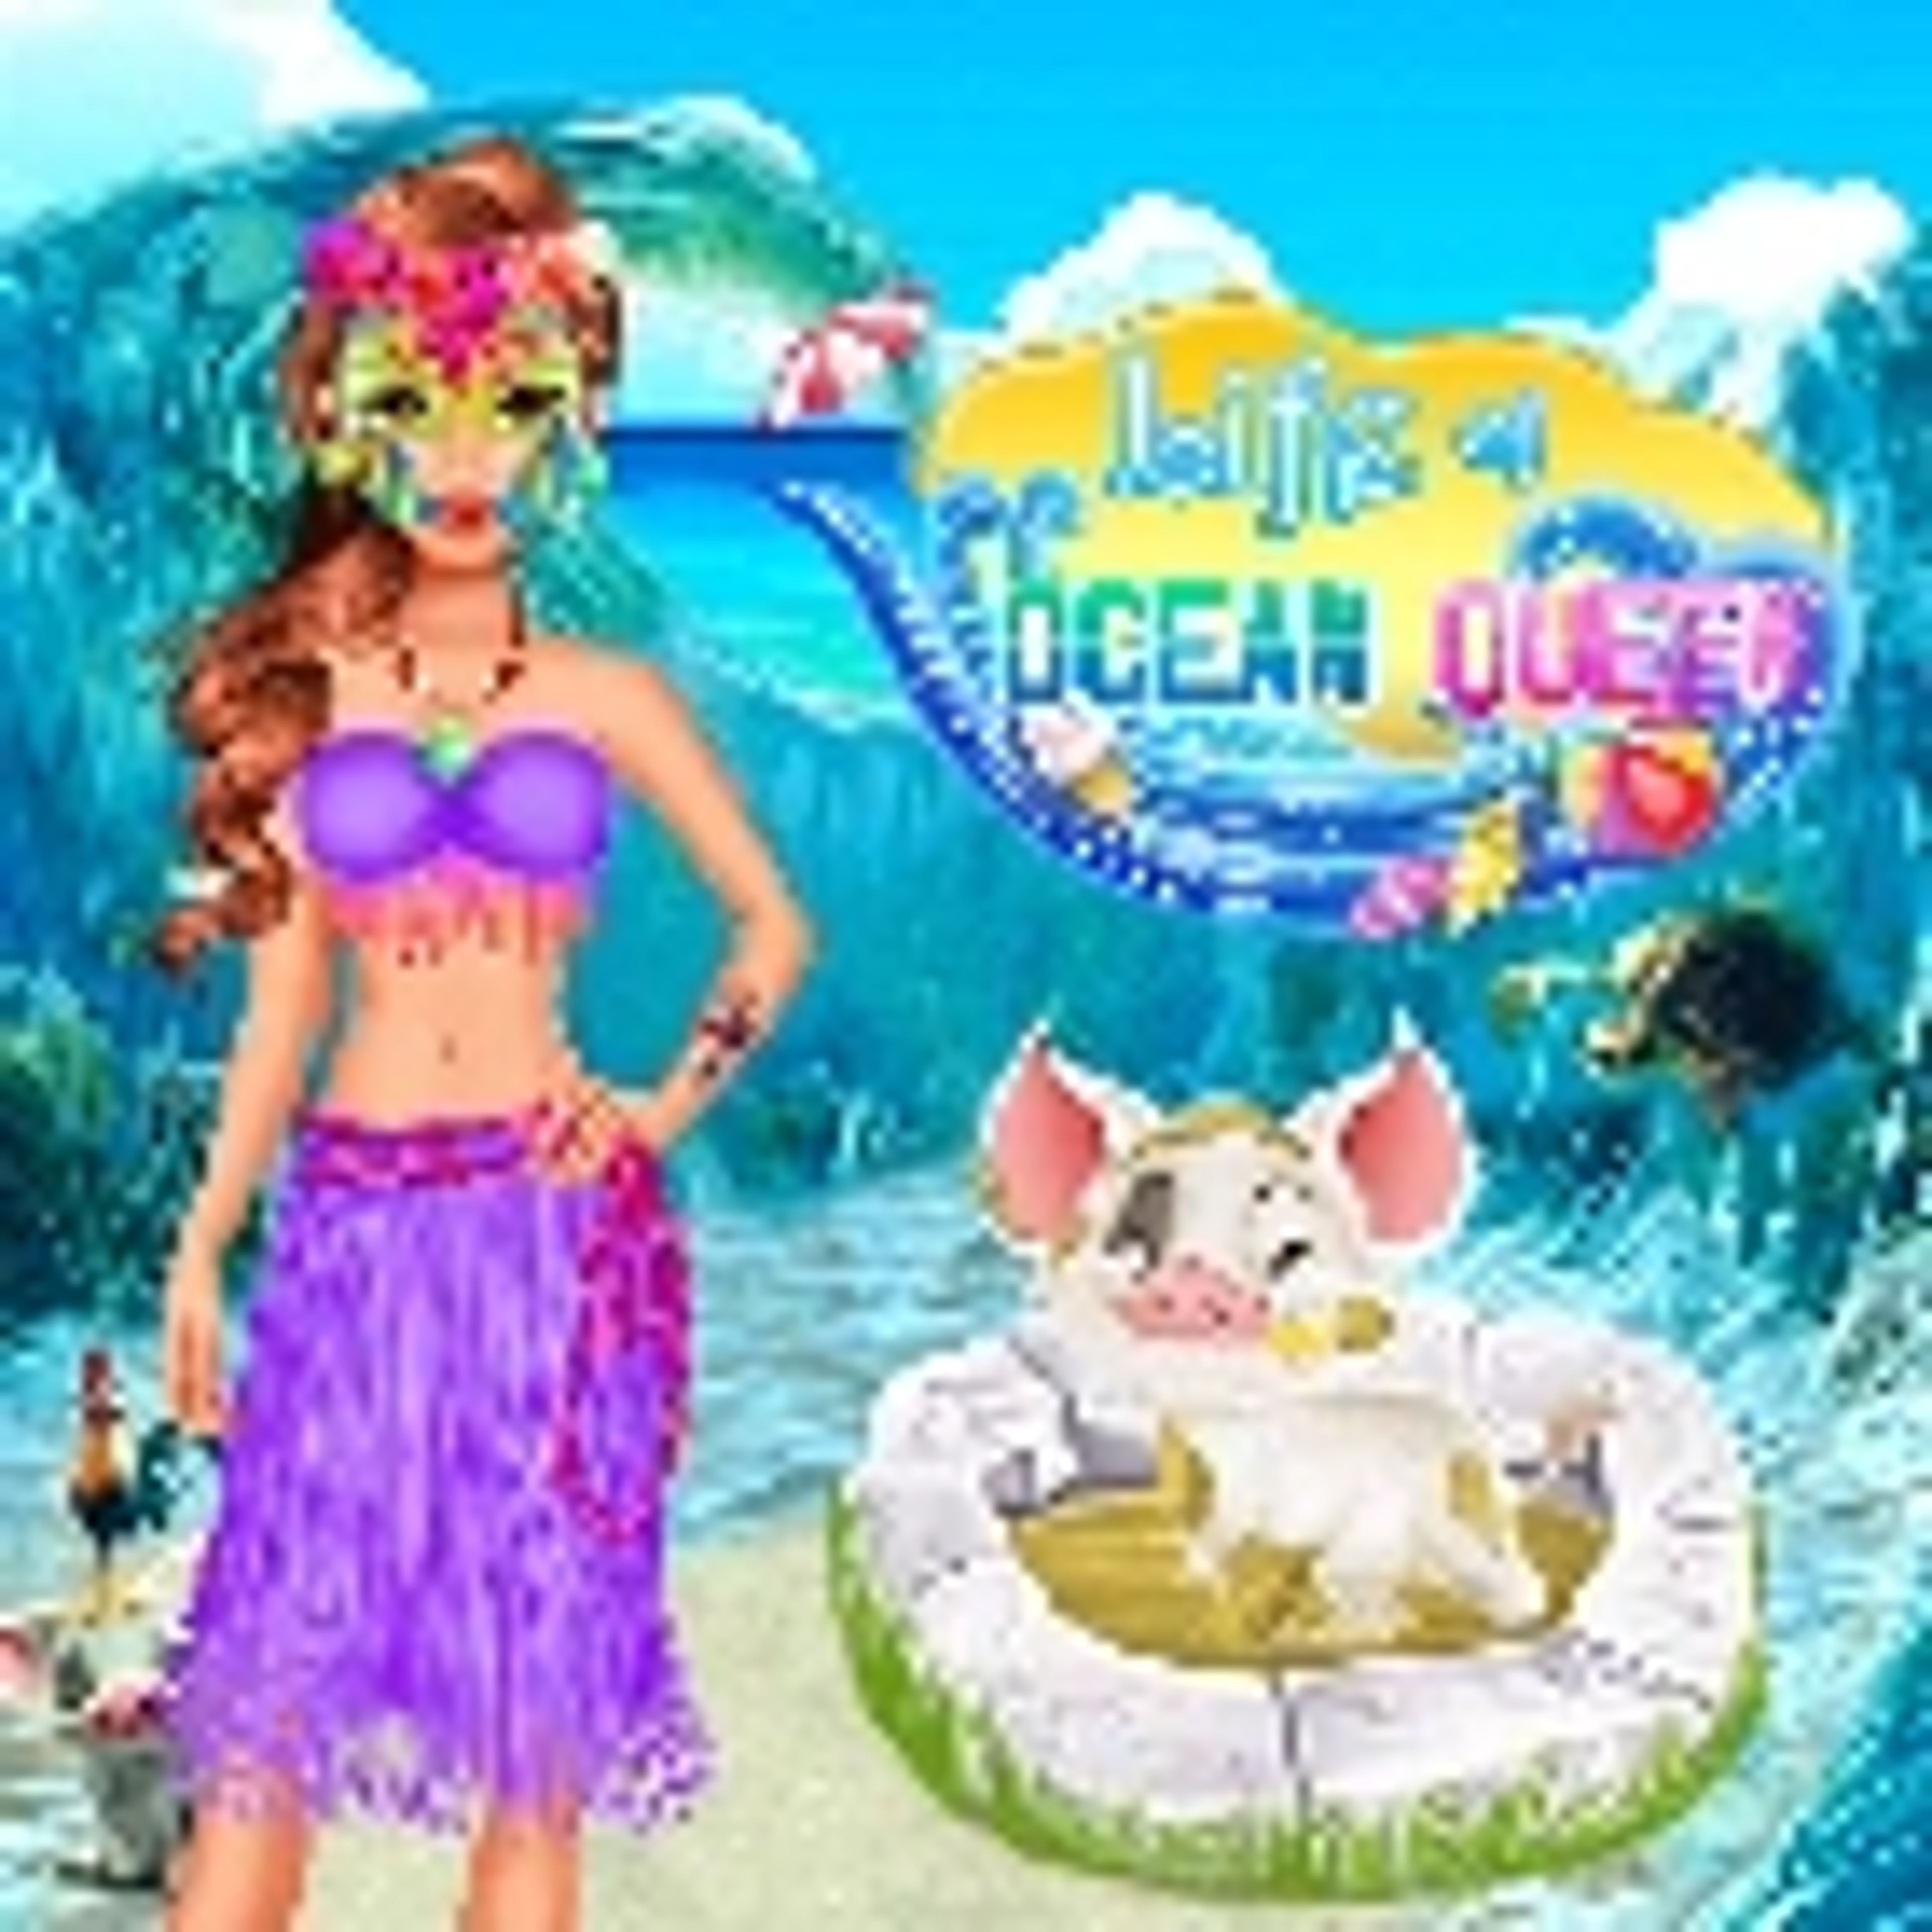 Life of ocean Queen